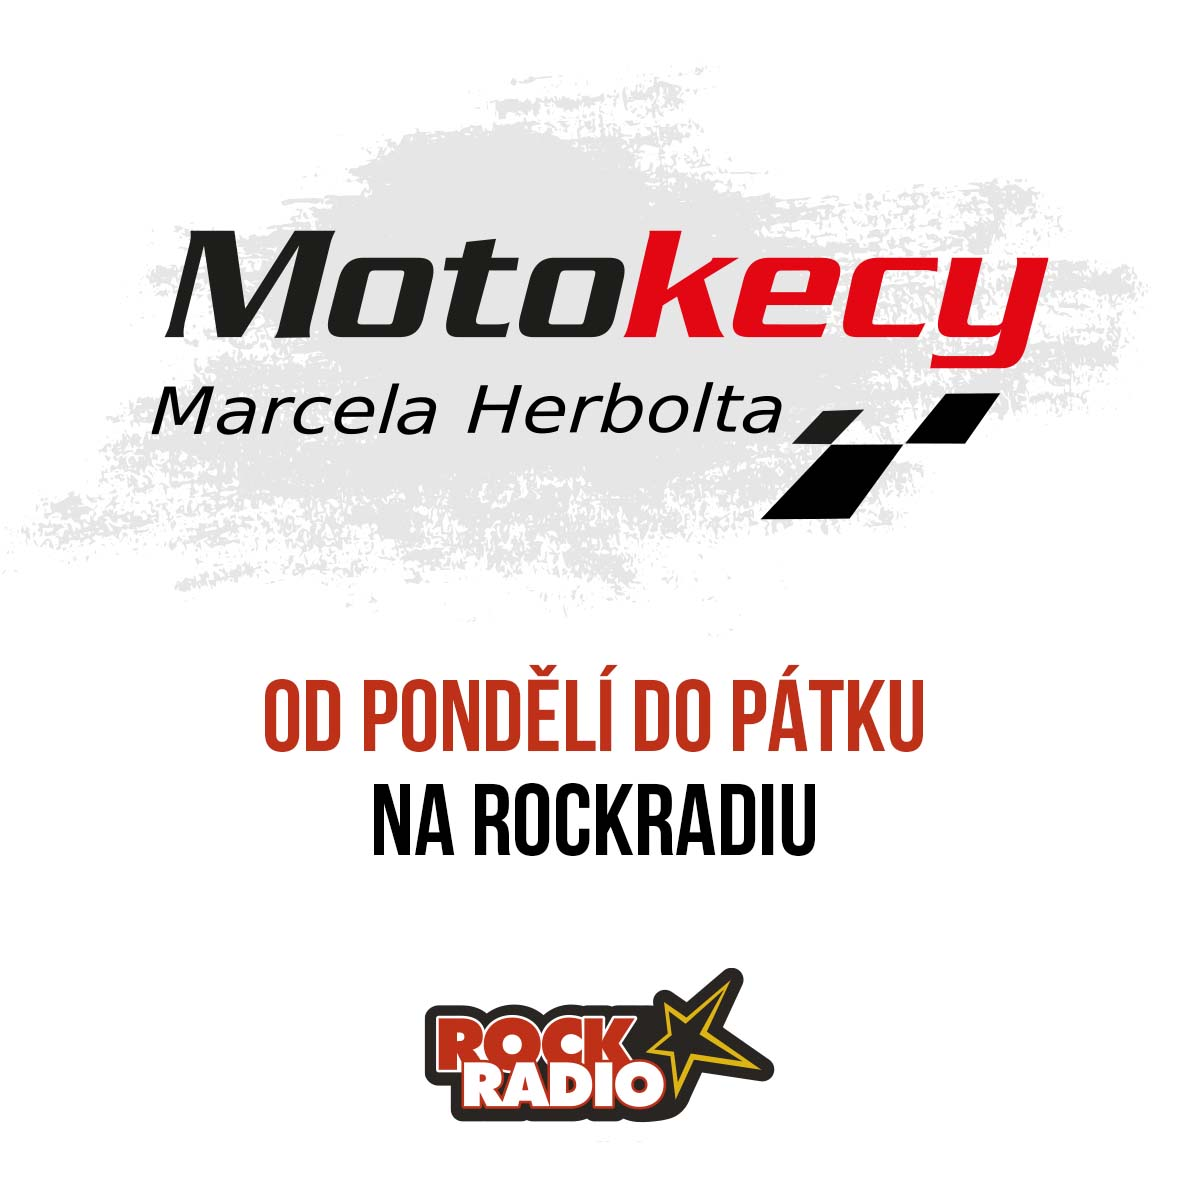 Motokecy Marcela Herbolta na pátek 13. října